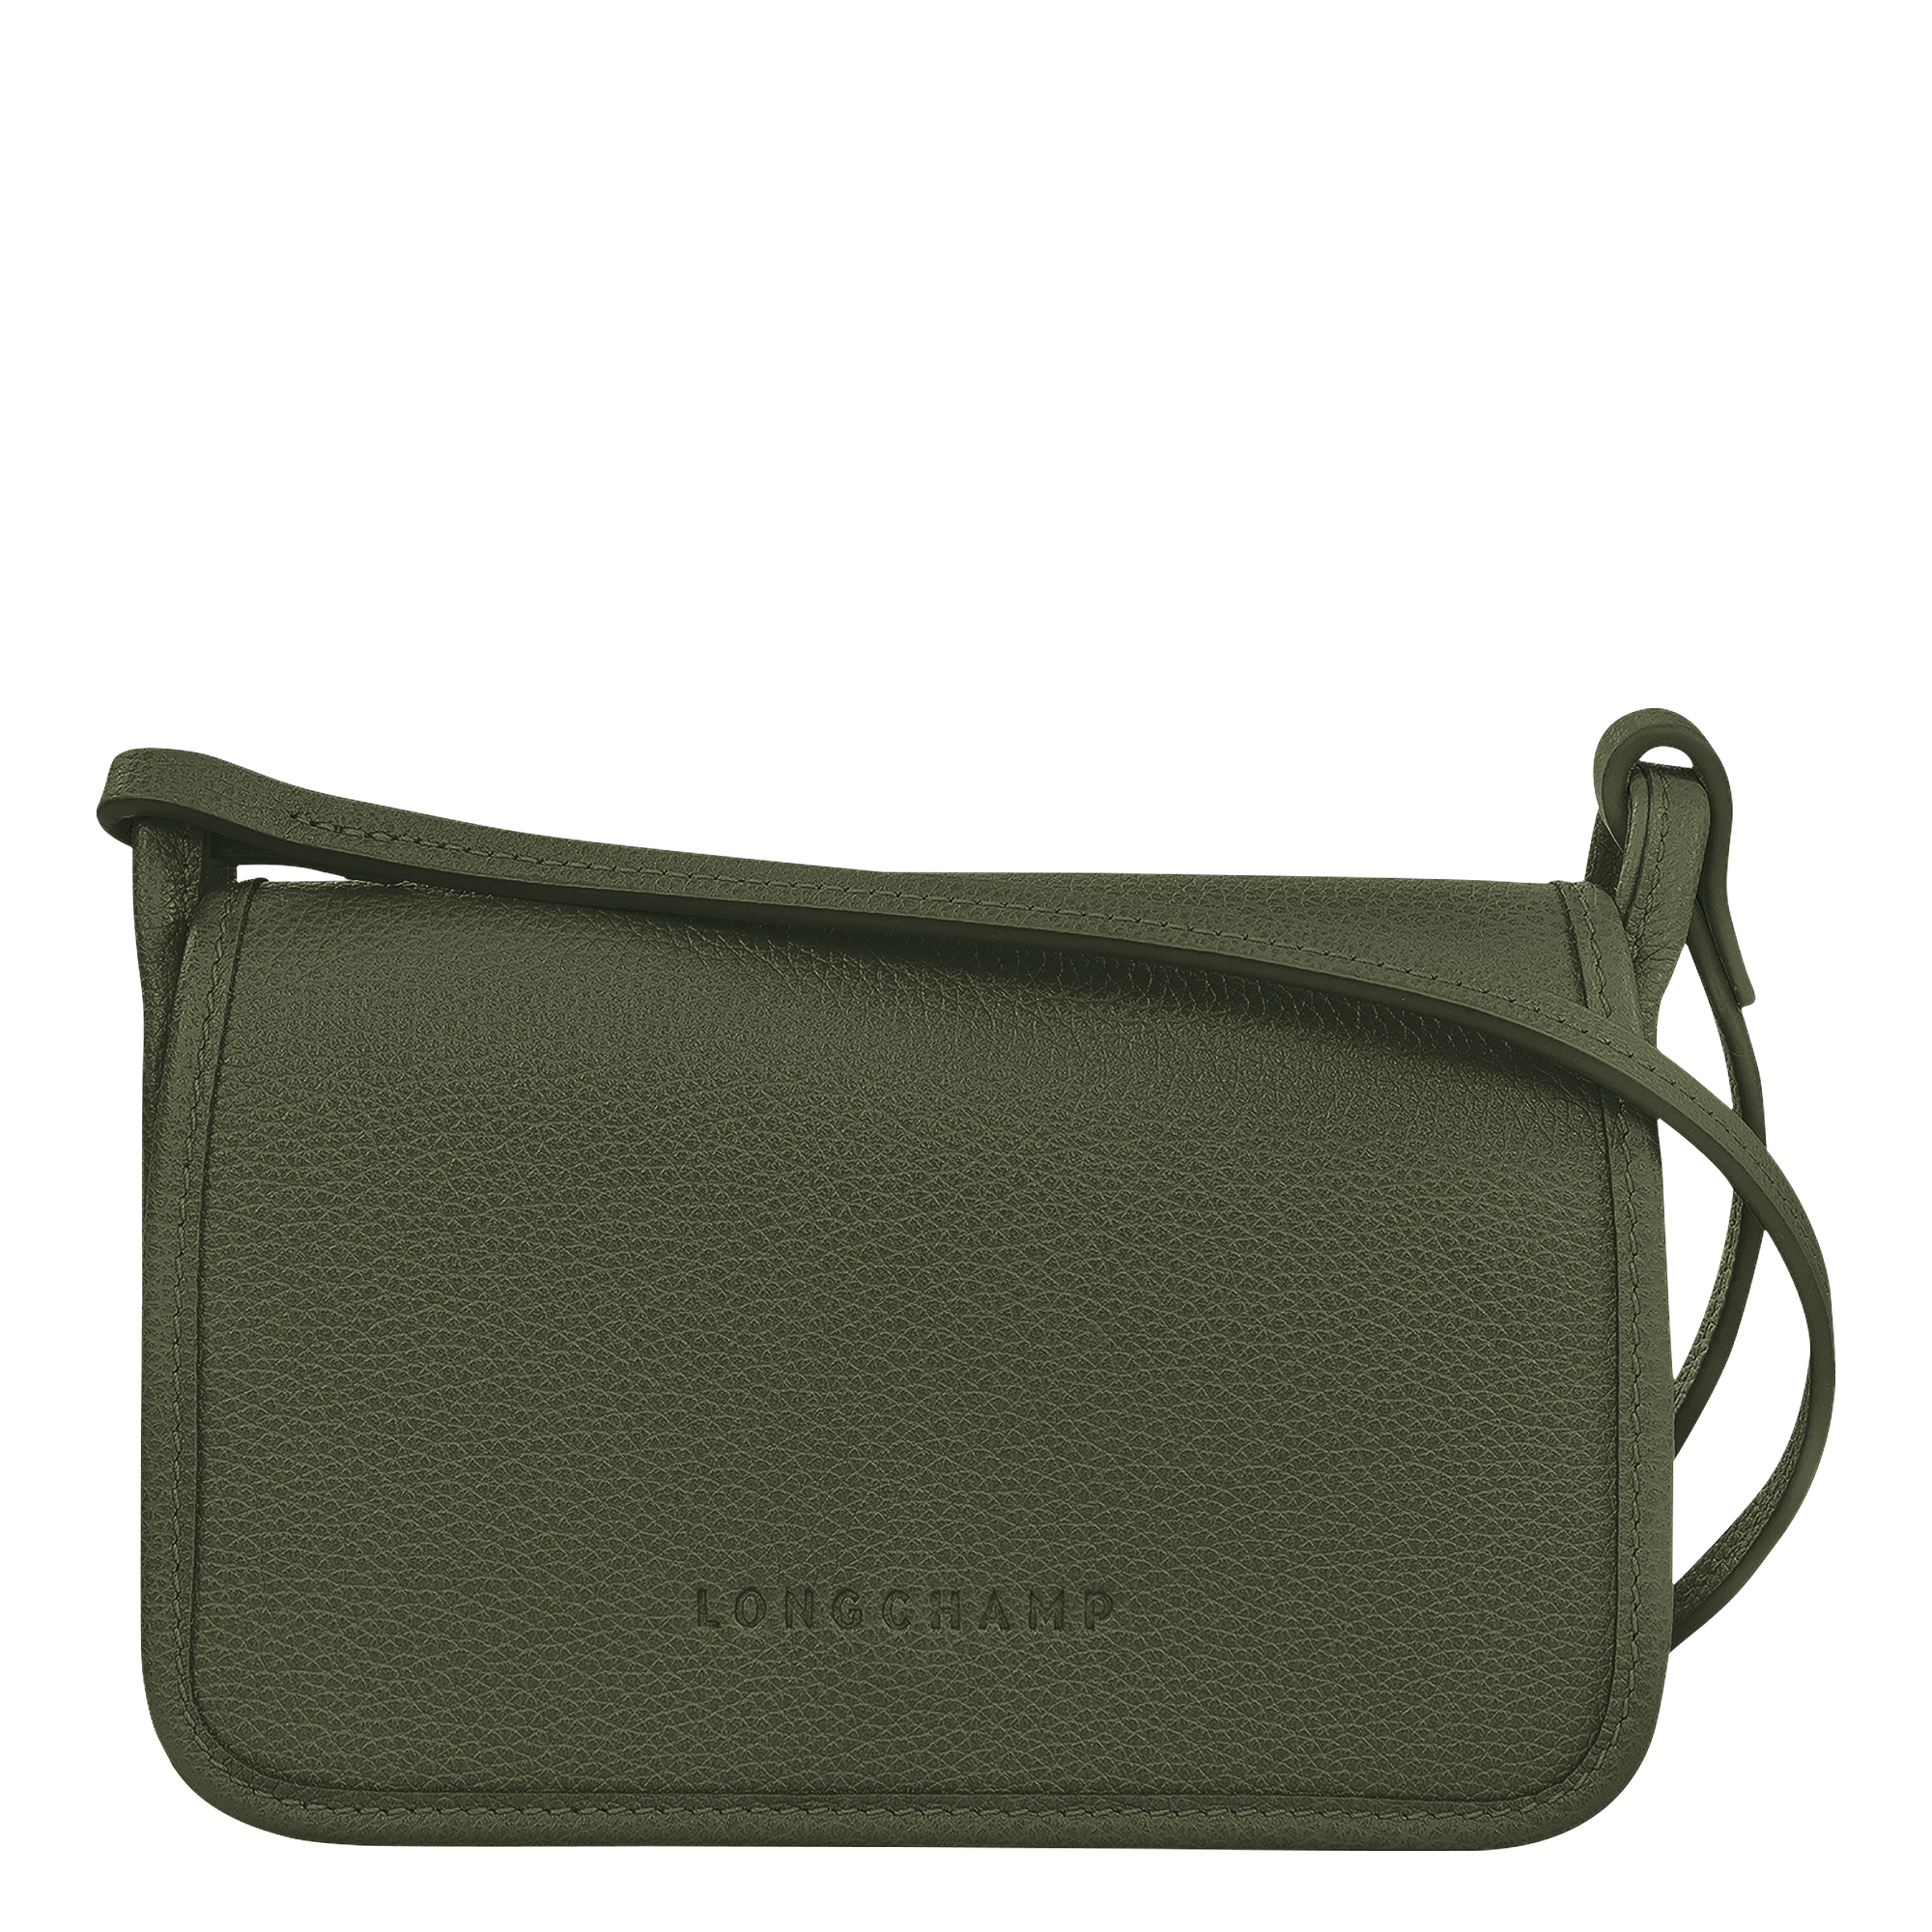 Le Foulonné XS Clutch Apricot - Leather | Longchamp US